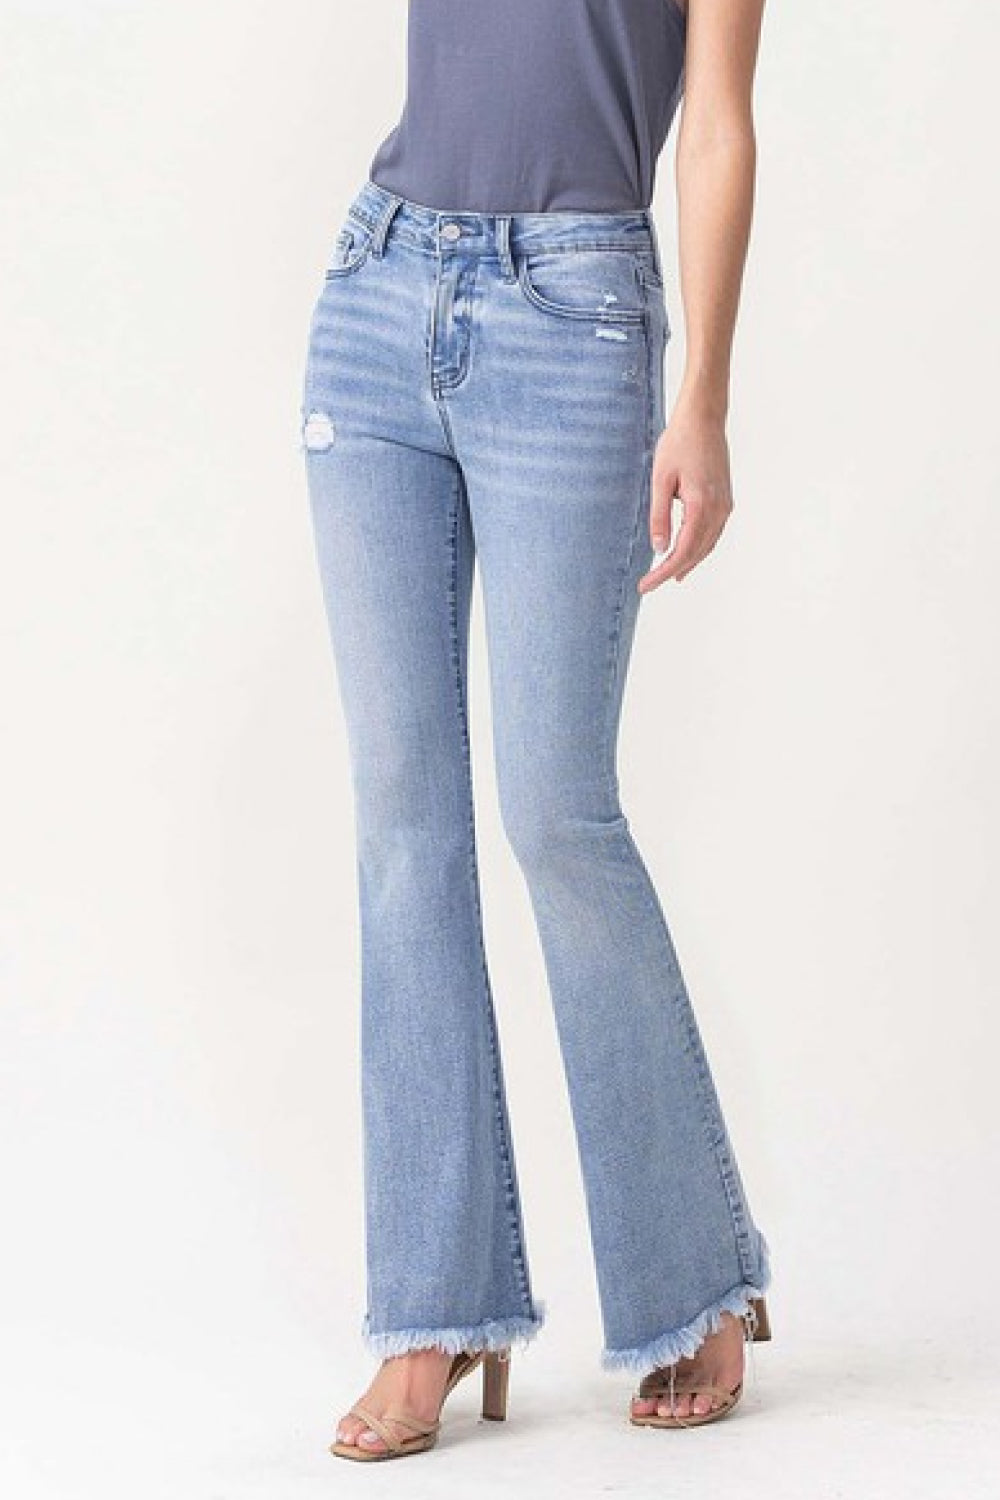 Lovervet High Rise Fray Flare Jeans